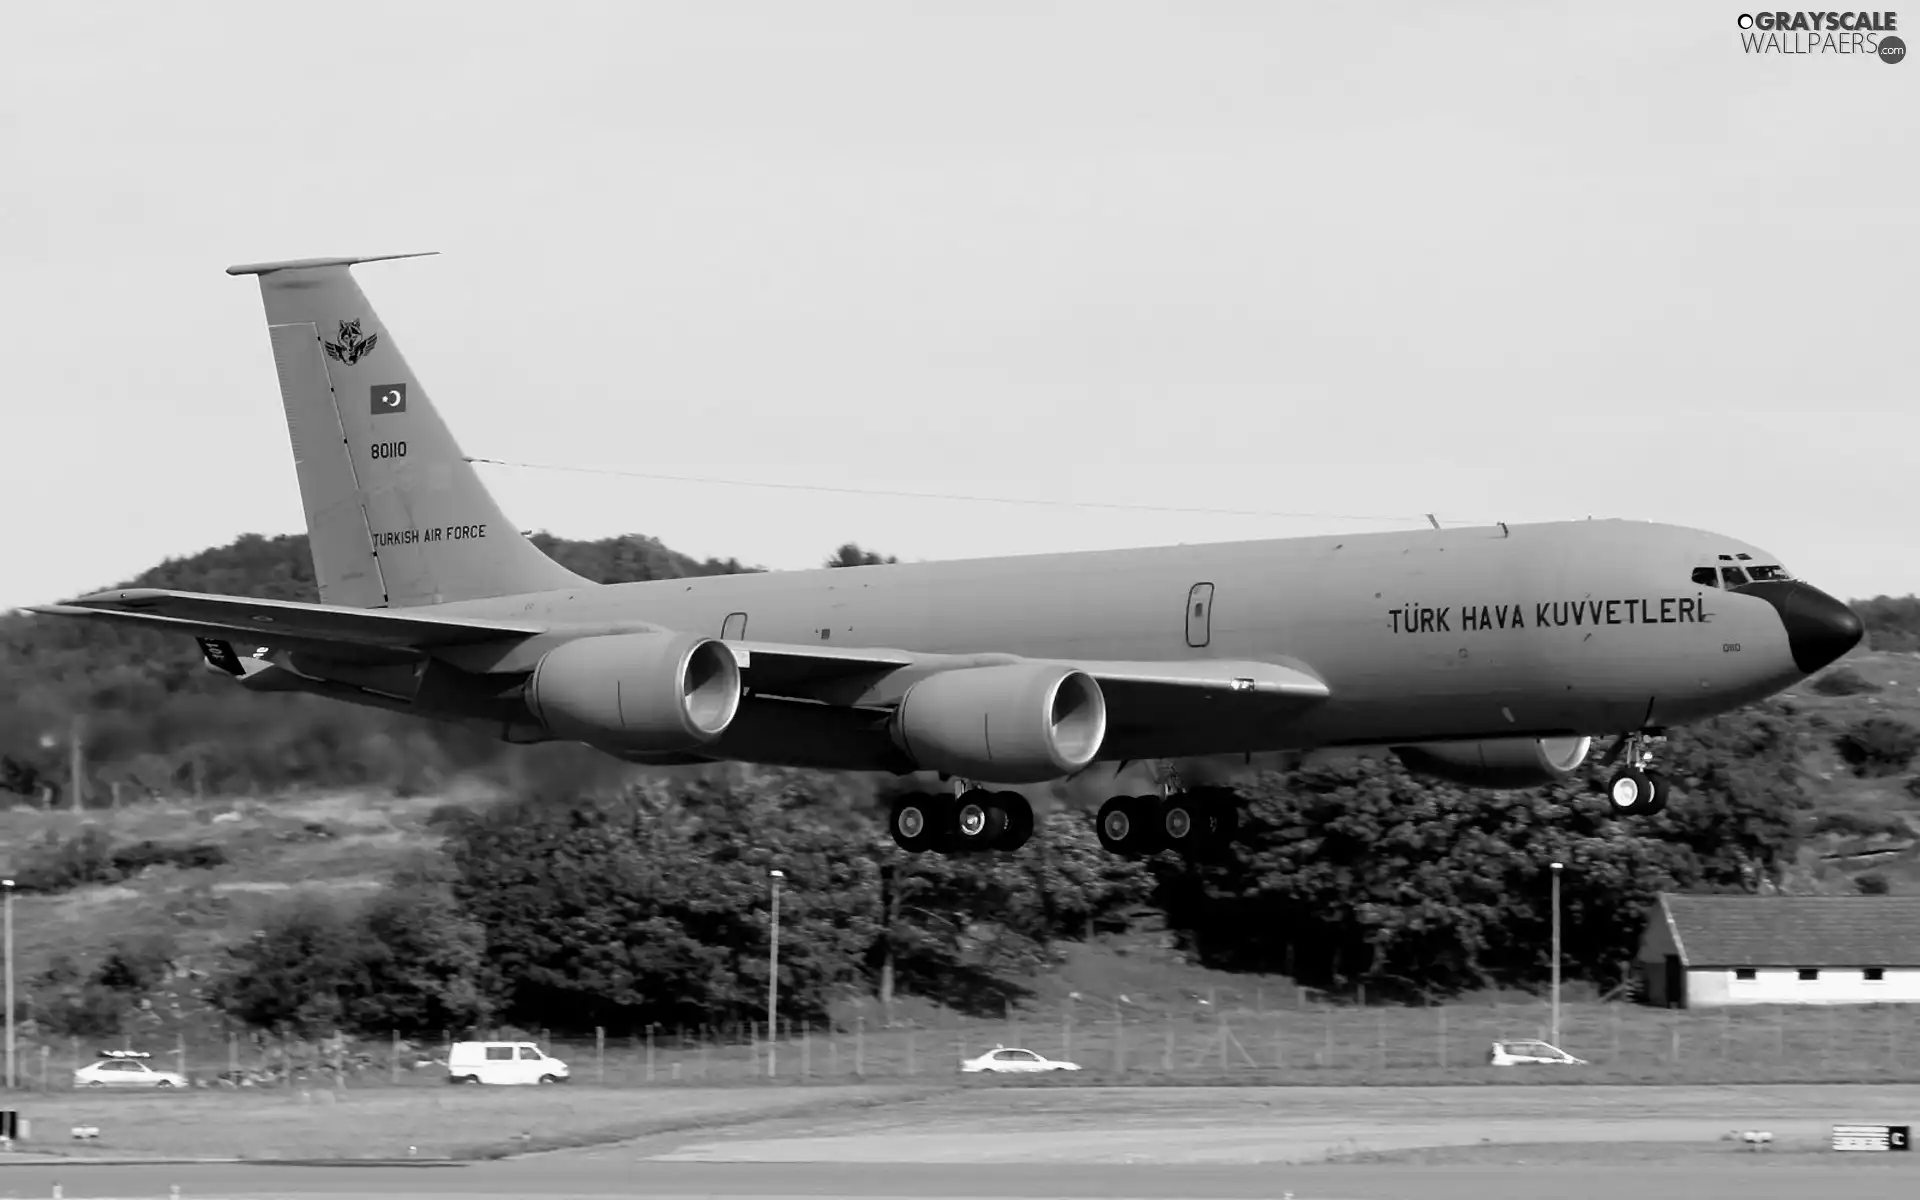 KC-135 Stratotanker, landing